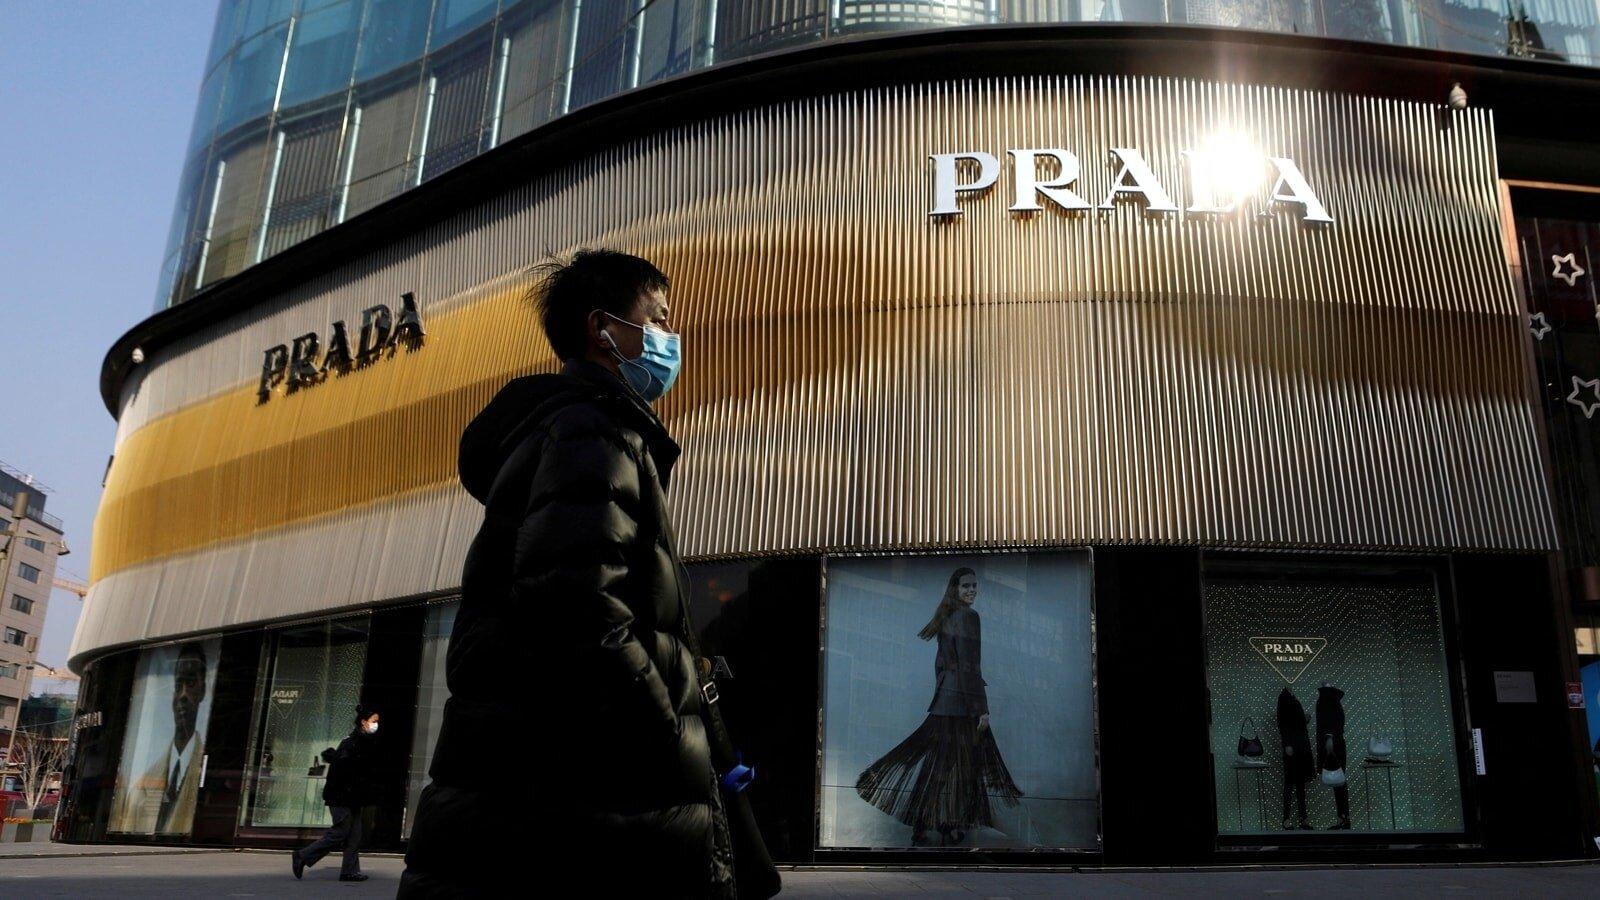 Nhà mốt PRADA điêu đứng vì scandal của các đại sứ thương hiệu (Ảnh: Internet)